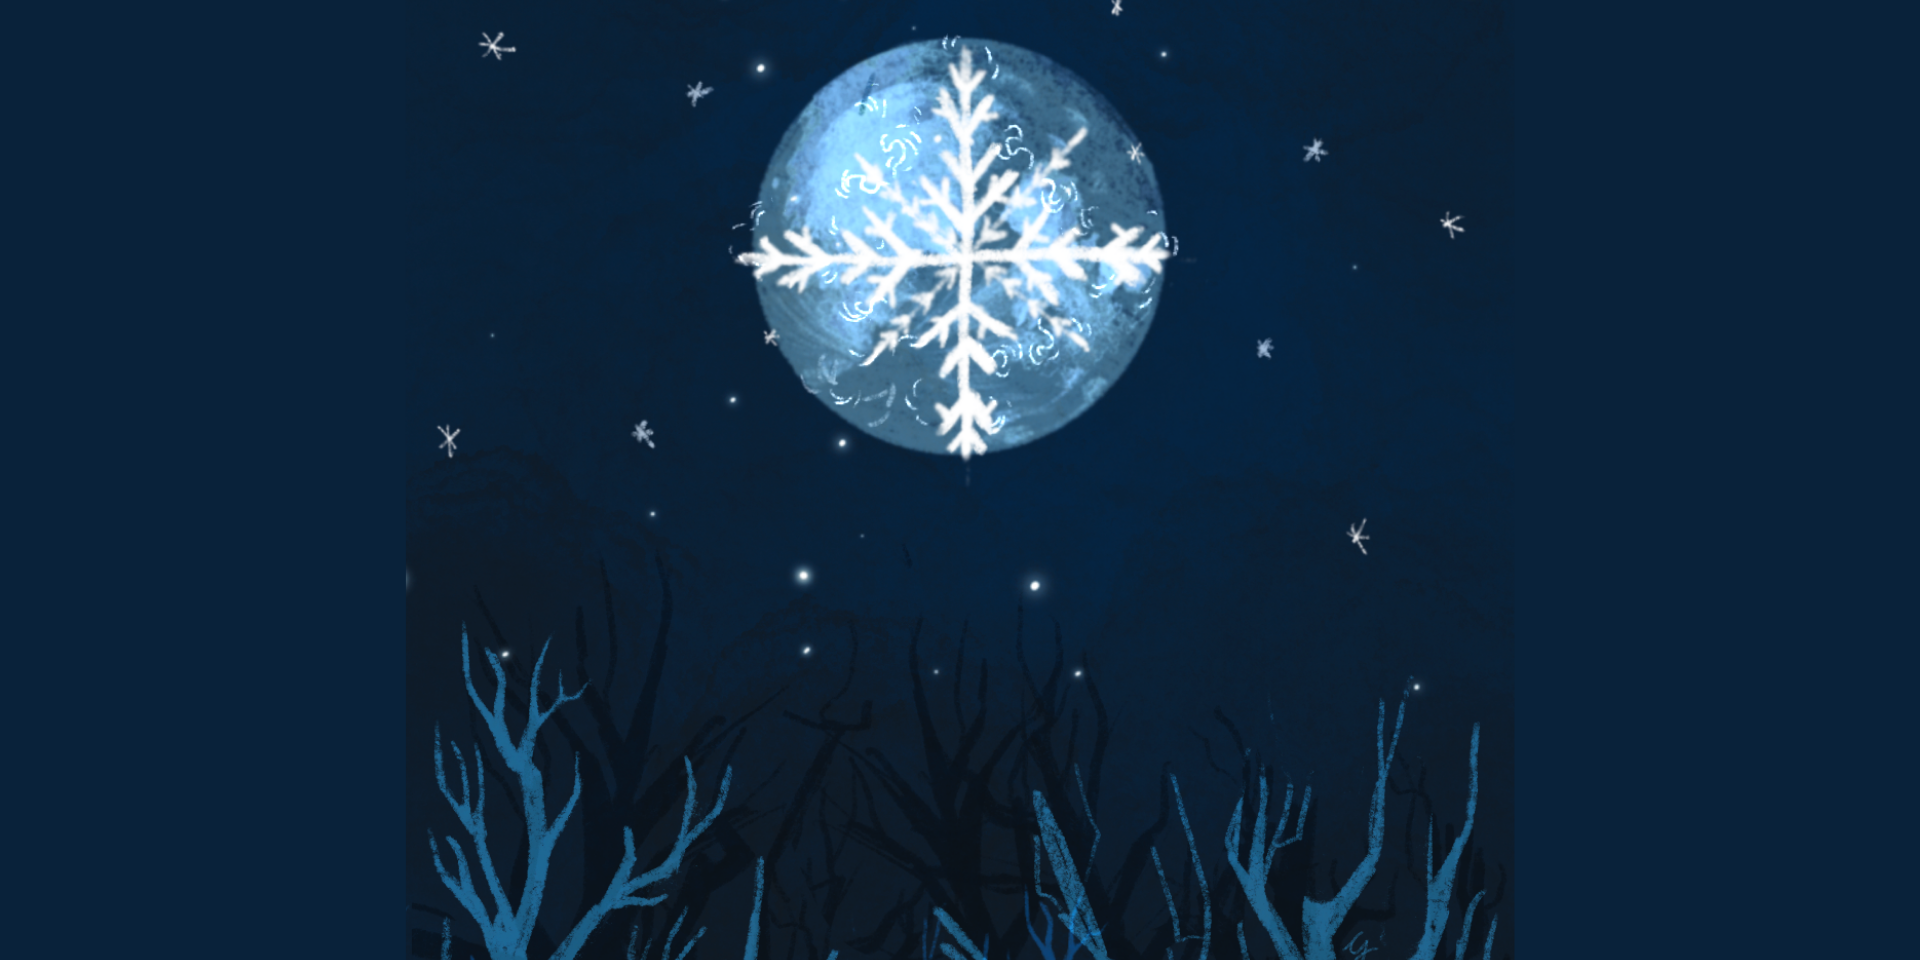 Volle maan ritueel december: Koude maan